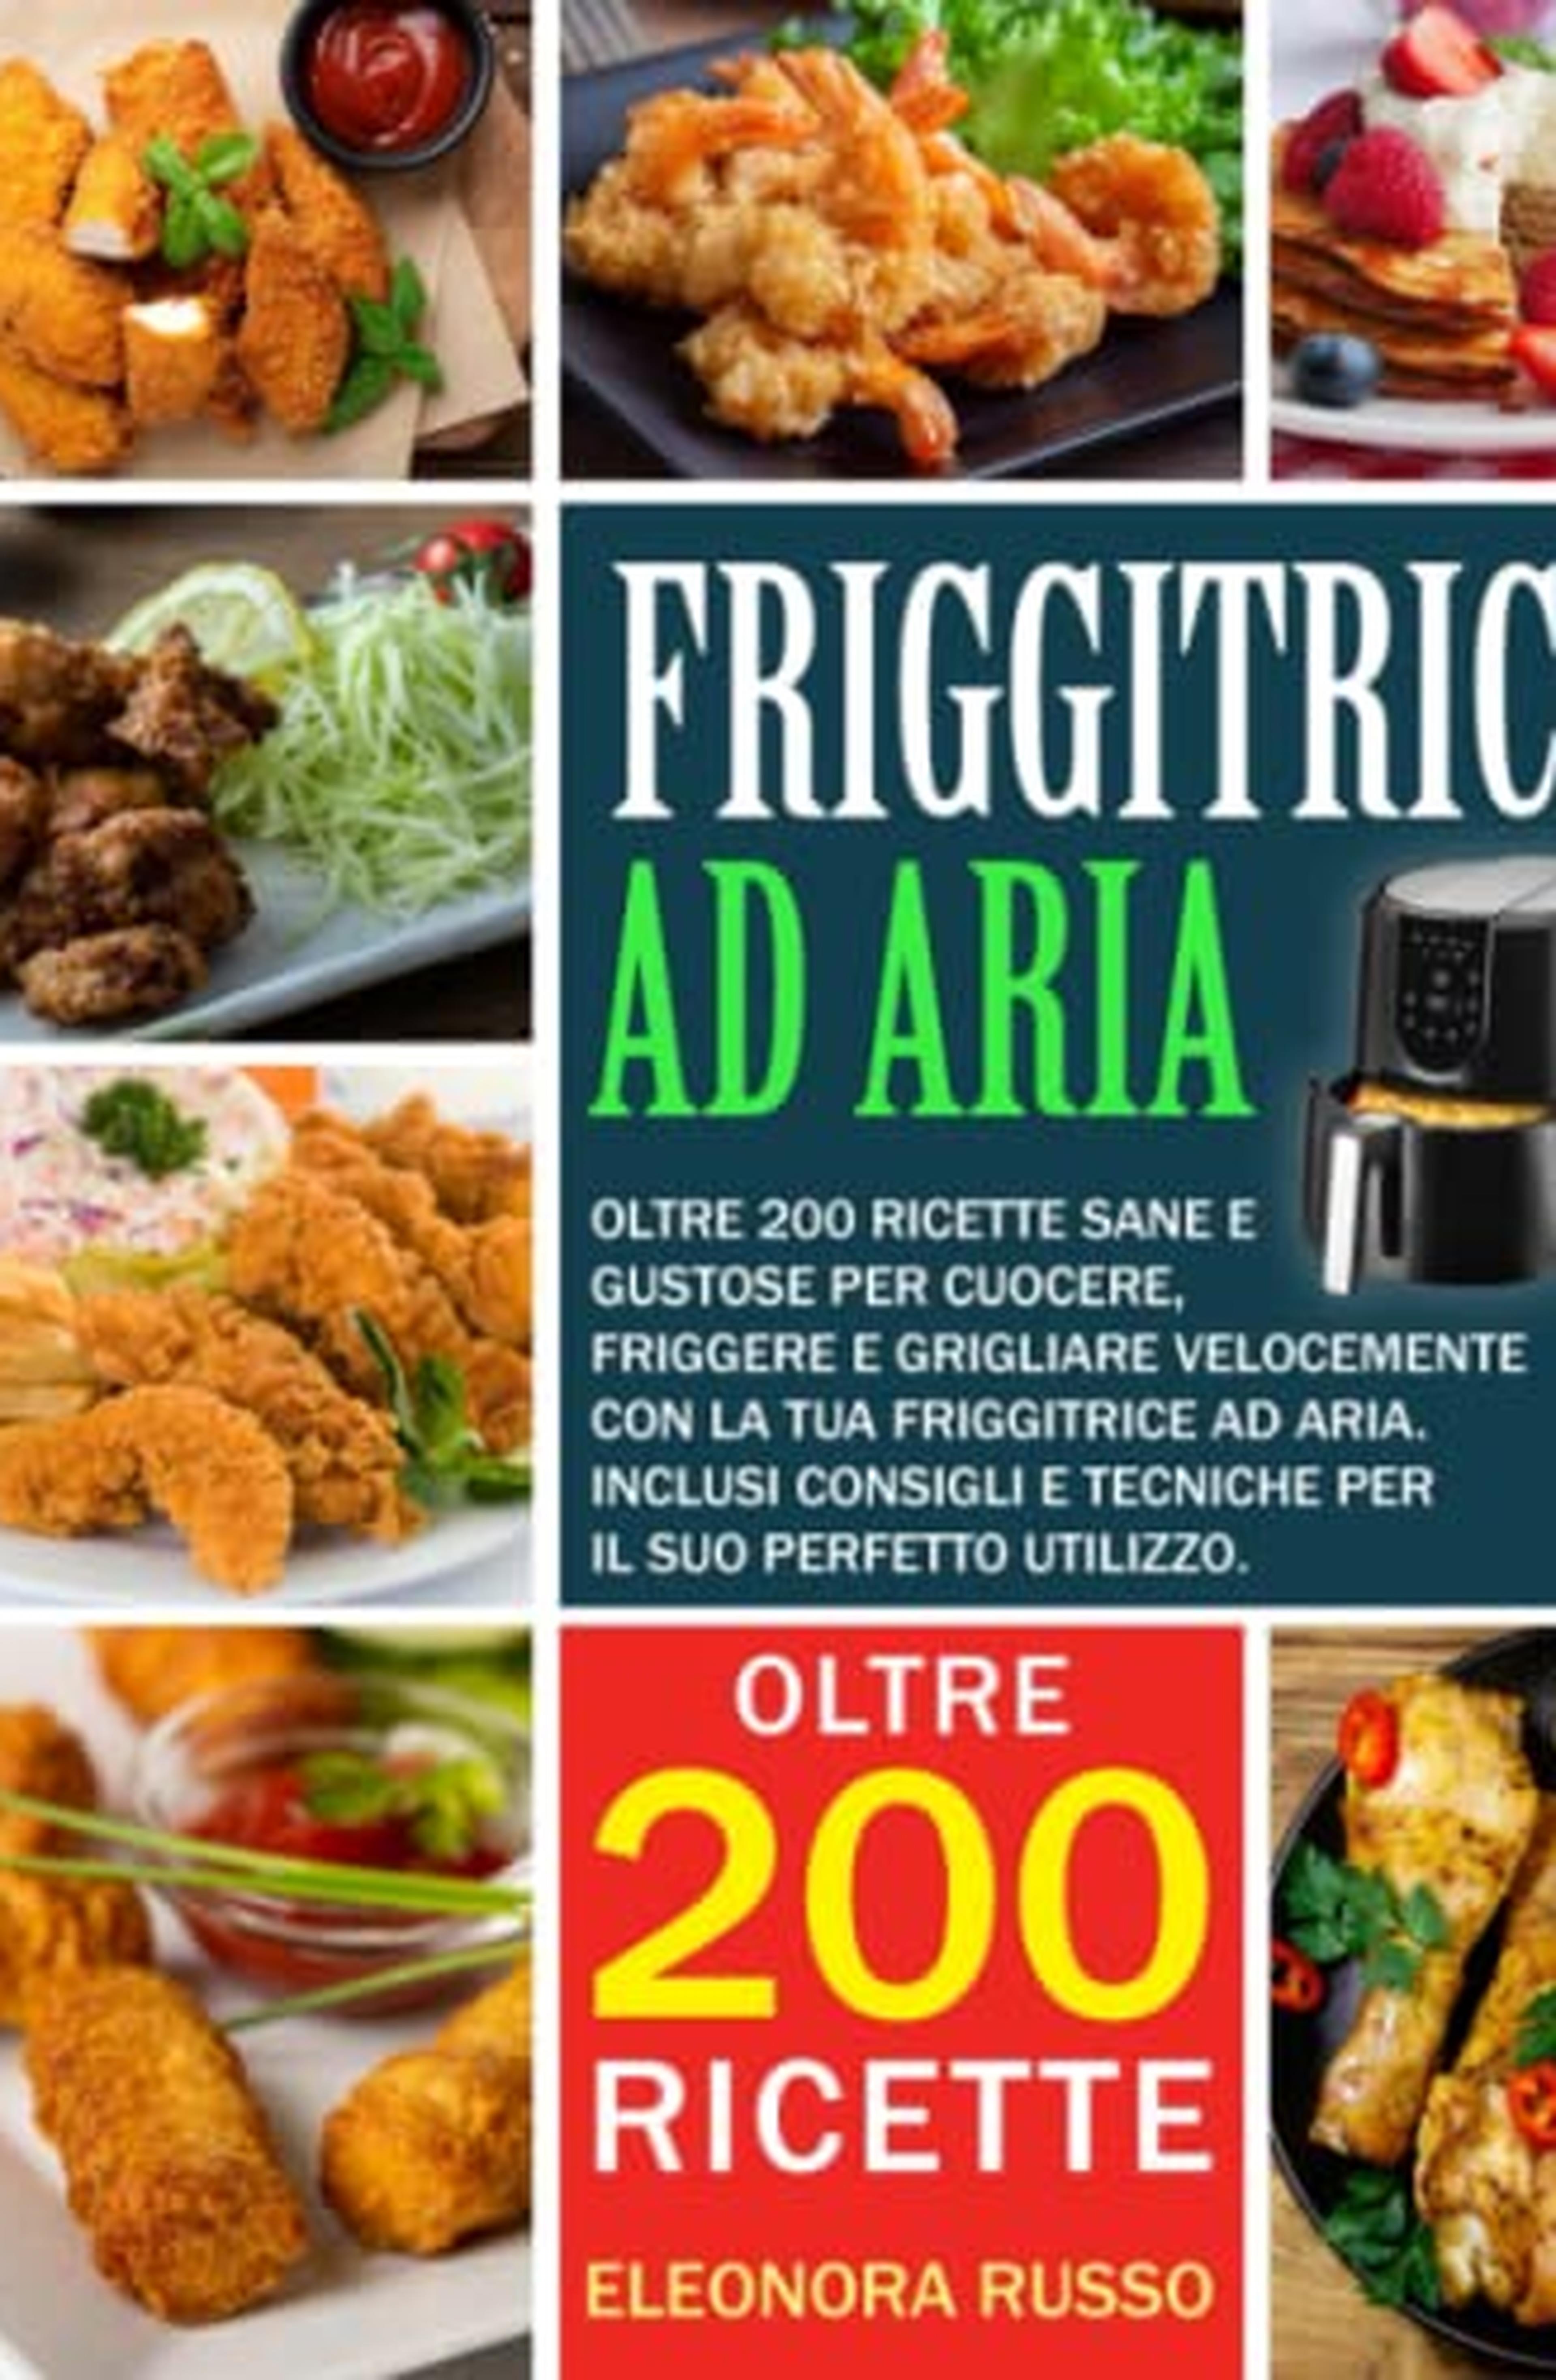 FRIGGITRICE AD ARIA: Oltre 200 ricette sane e gustose per cuocere, friggere e grigliare velocemente con la tua friggitrice ad aria. Inclusi consigli e tecniche per il suo perfetto utilizzo